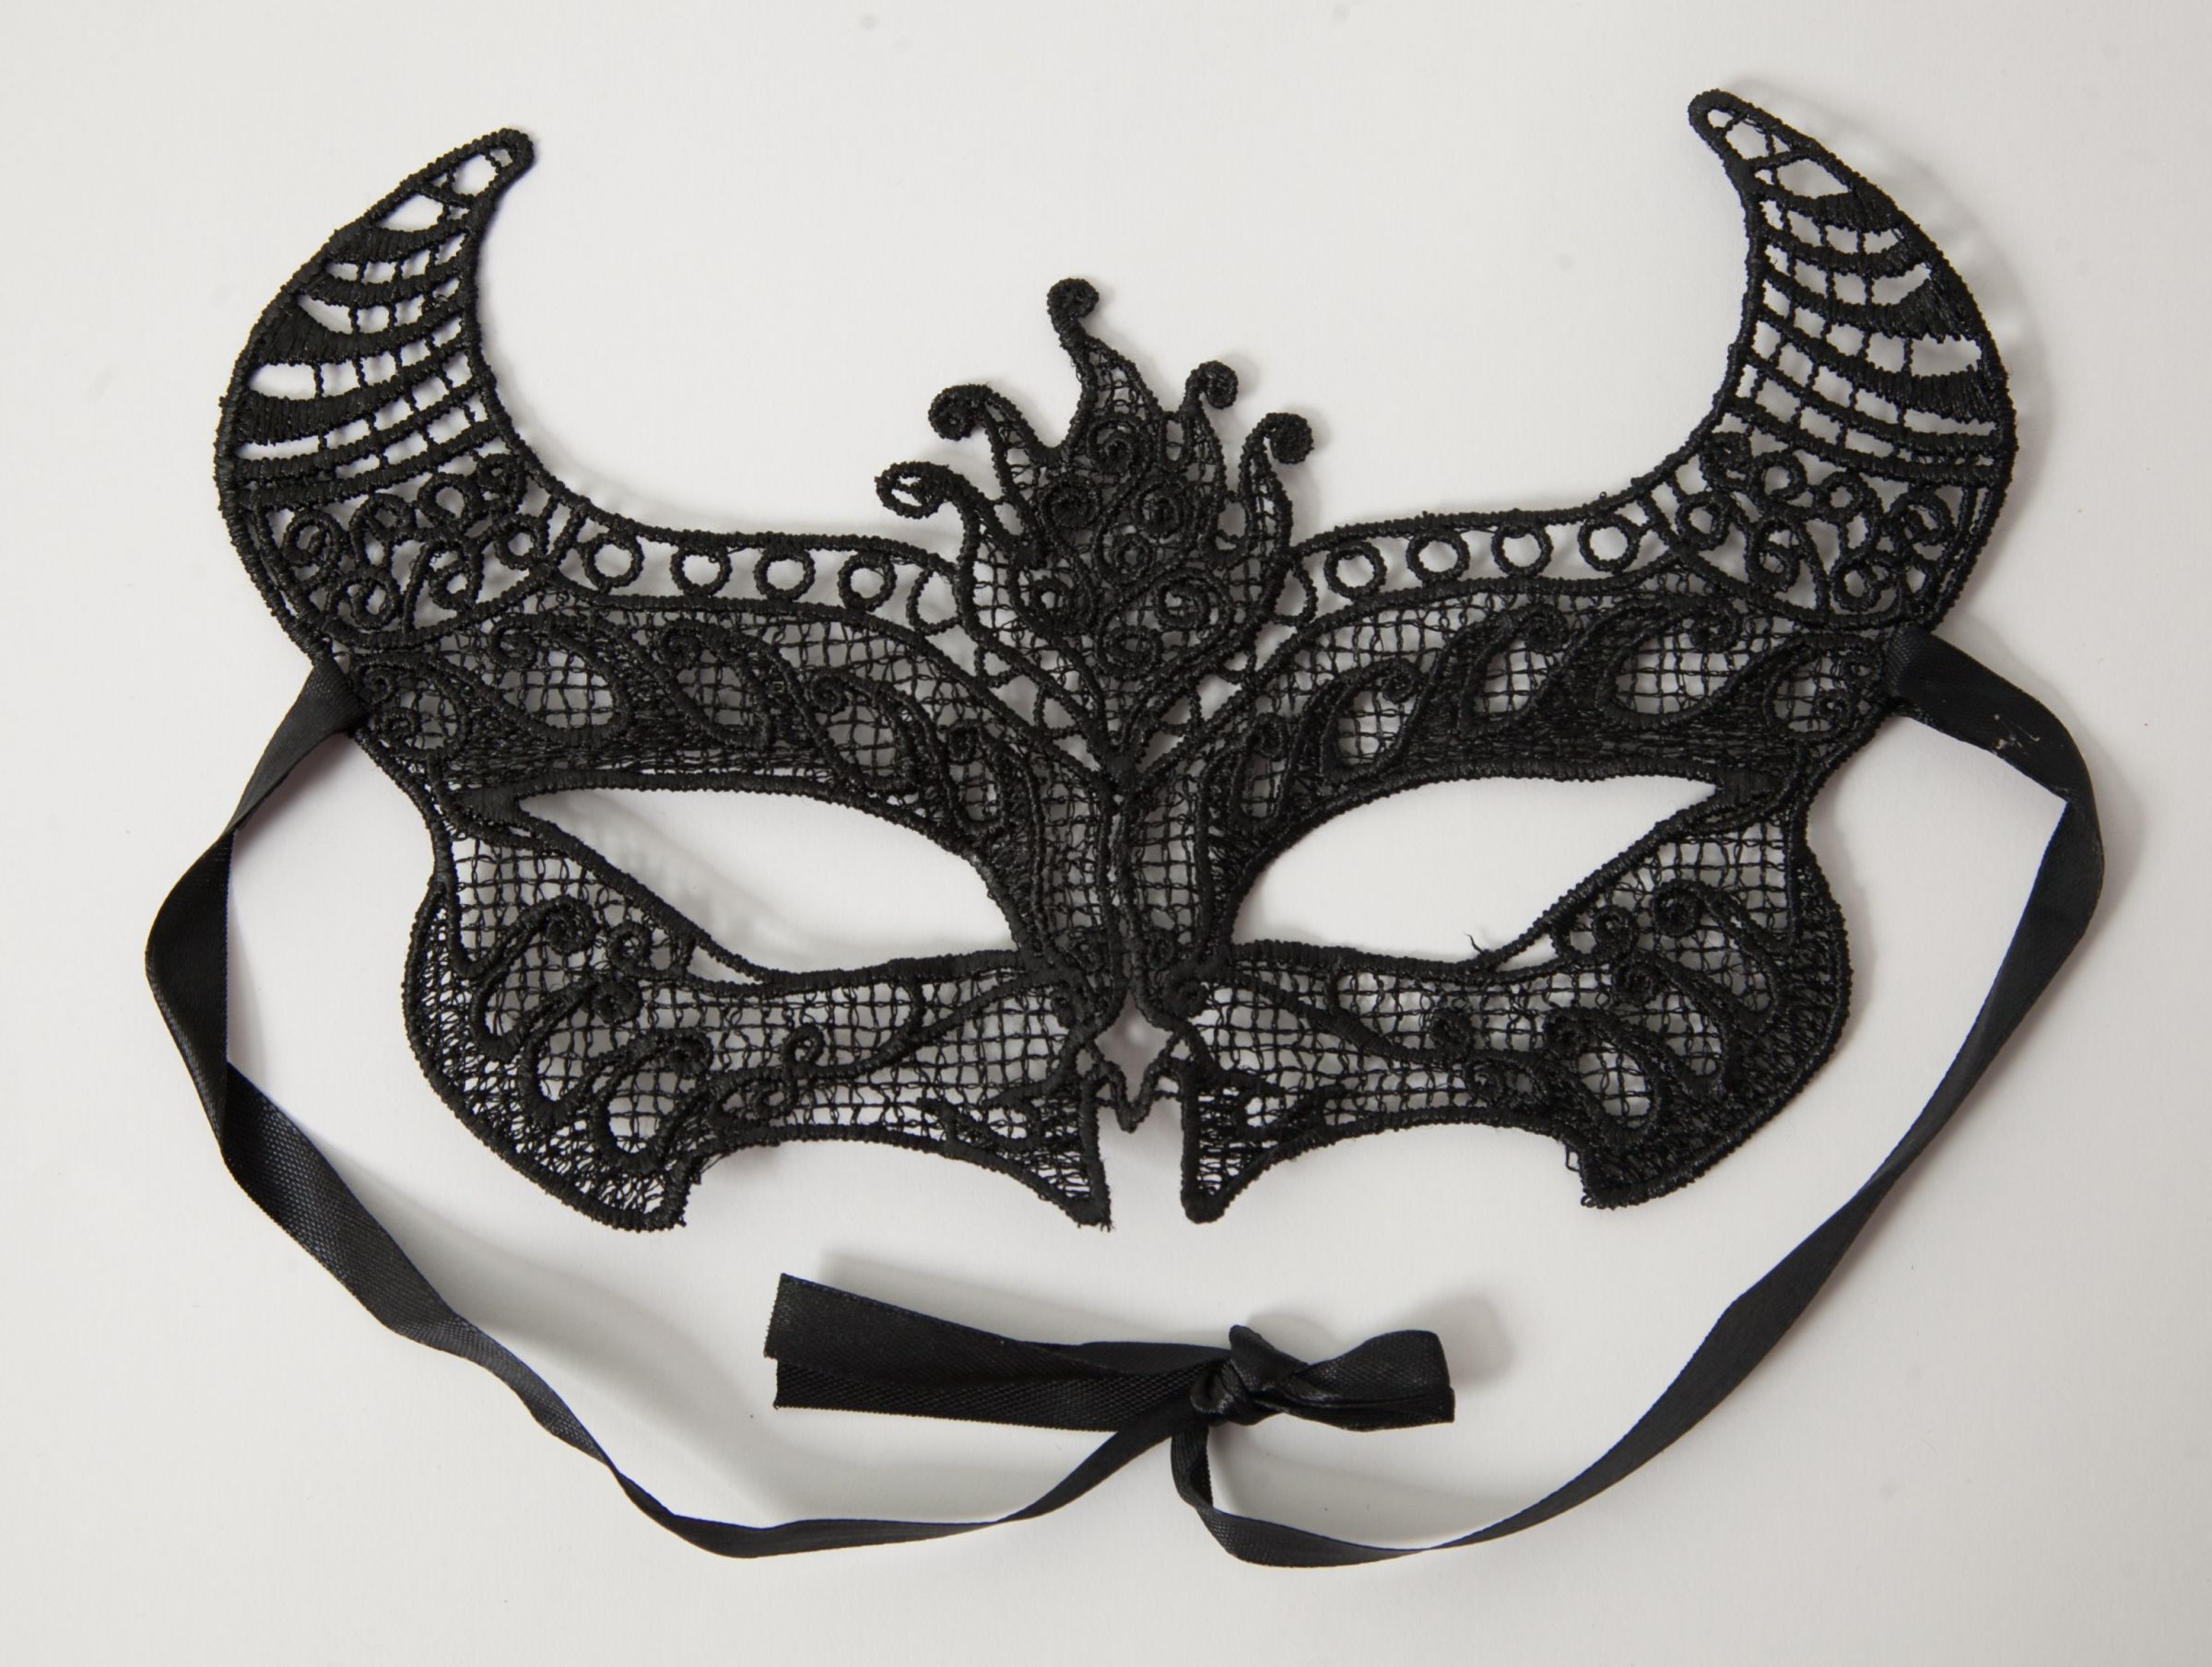 Кружевная маска в венецианском стиле с многочисленными ажурными узорами. Завязывается на атласные ленты. Поставляется в бумажном конверте. Ширина - 11 см.